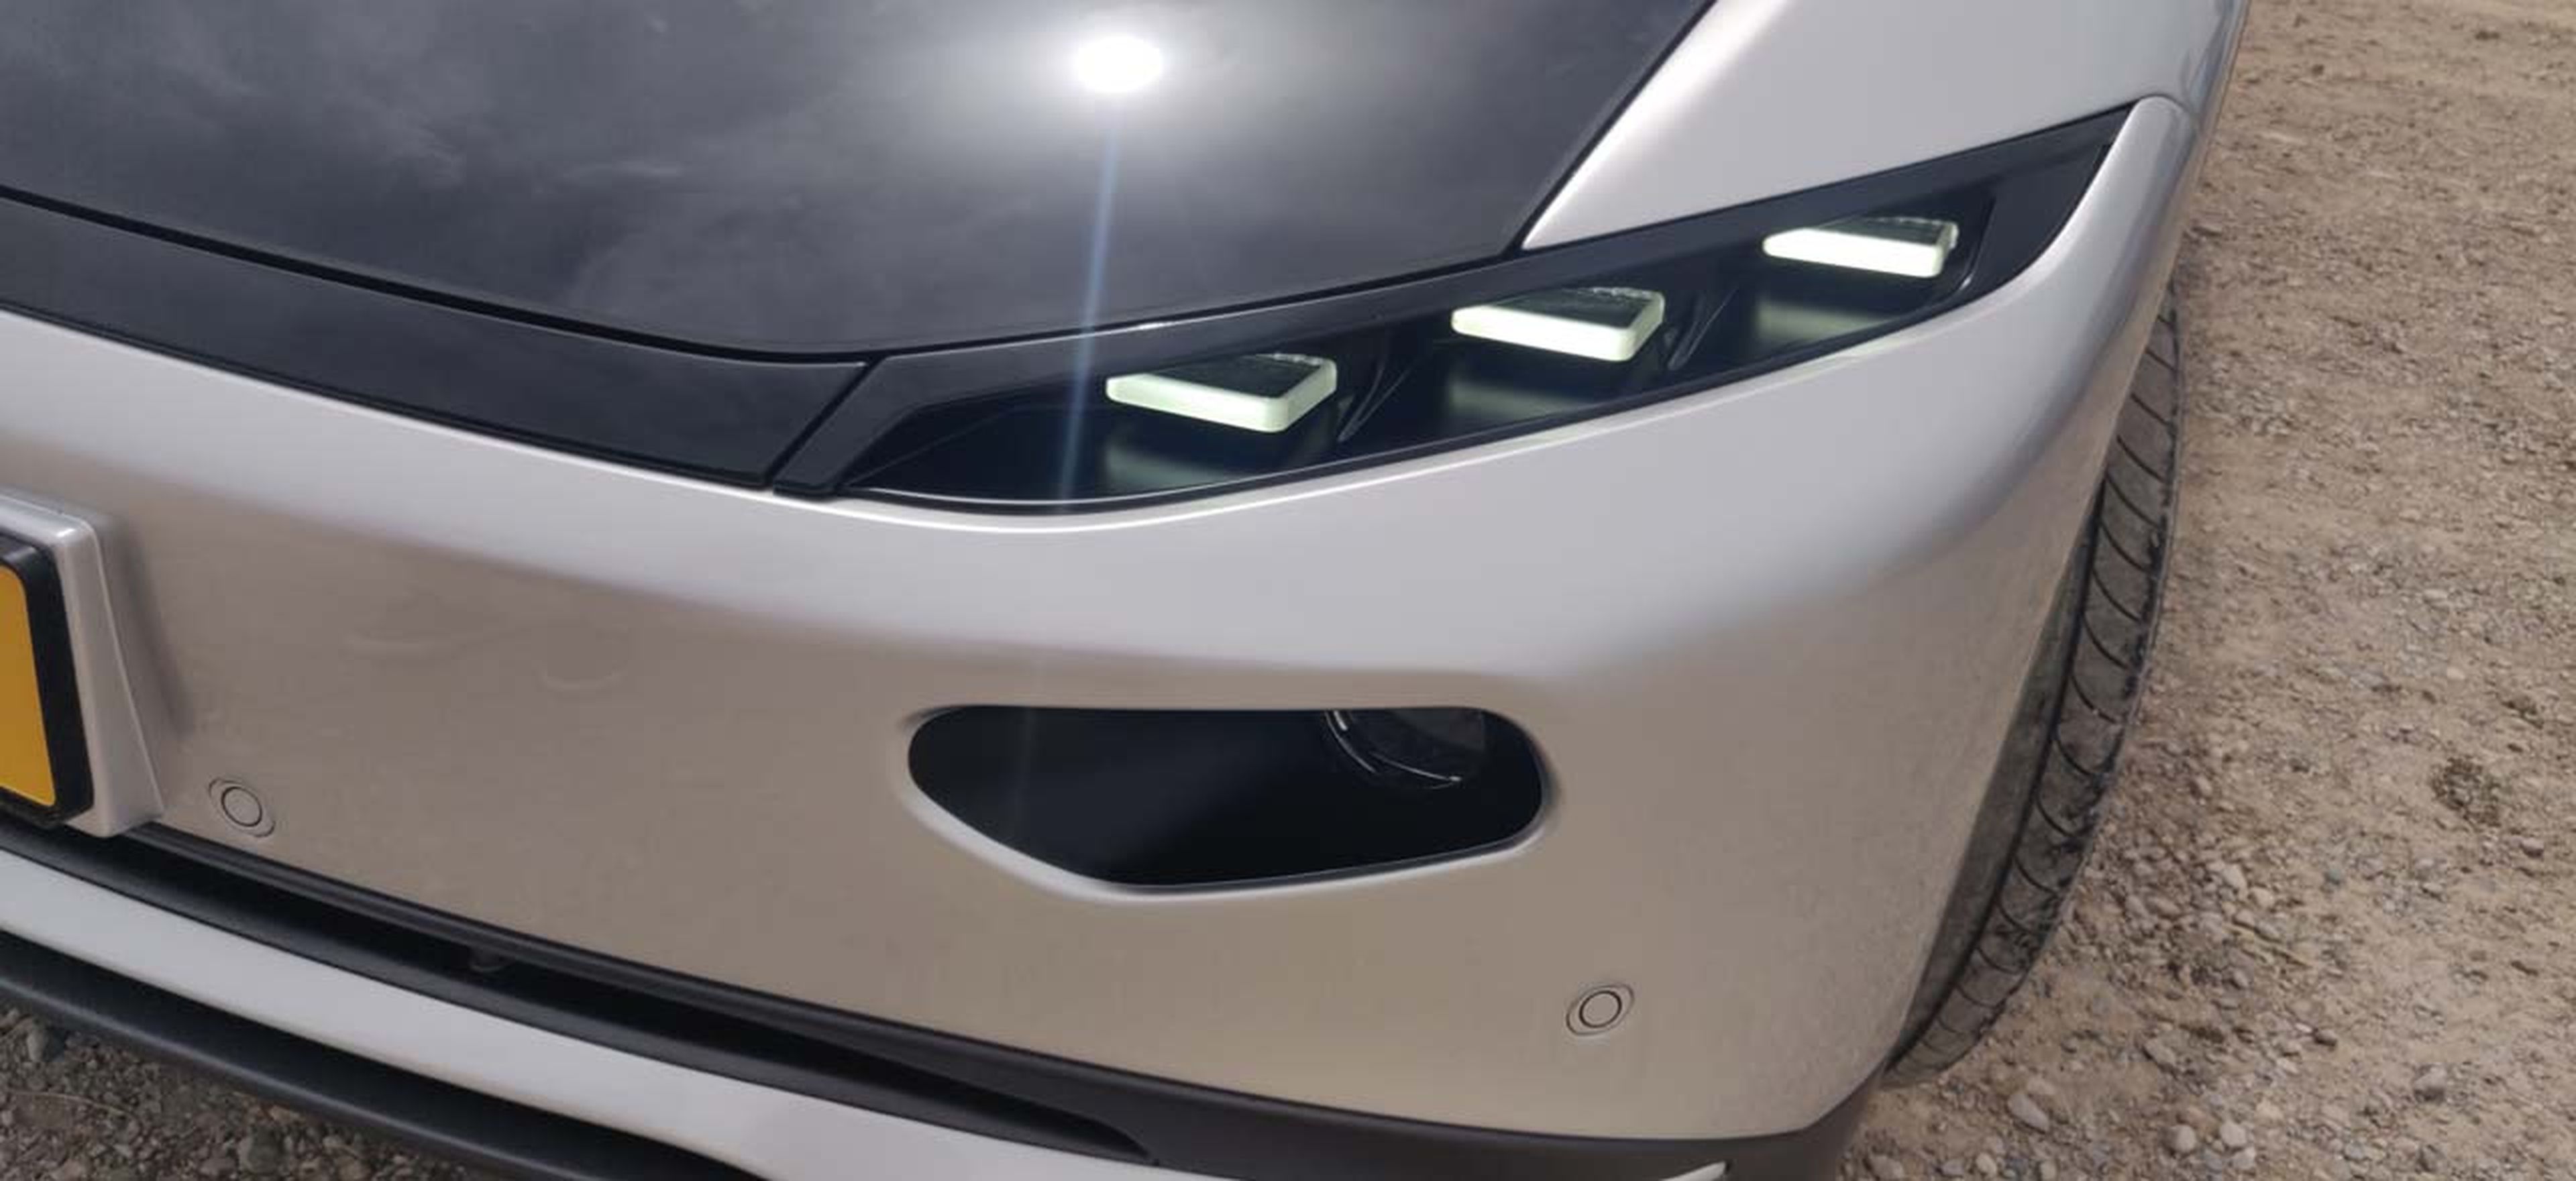 Prueba Lightyear 0, el coche solar eléctrico.